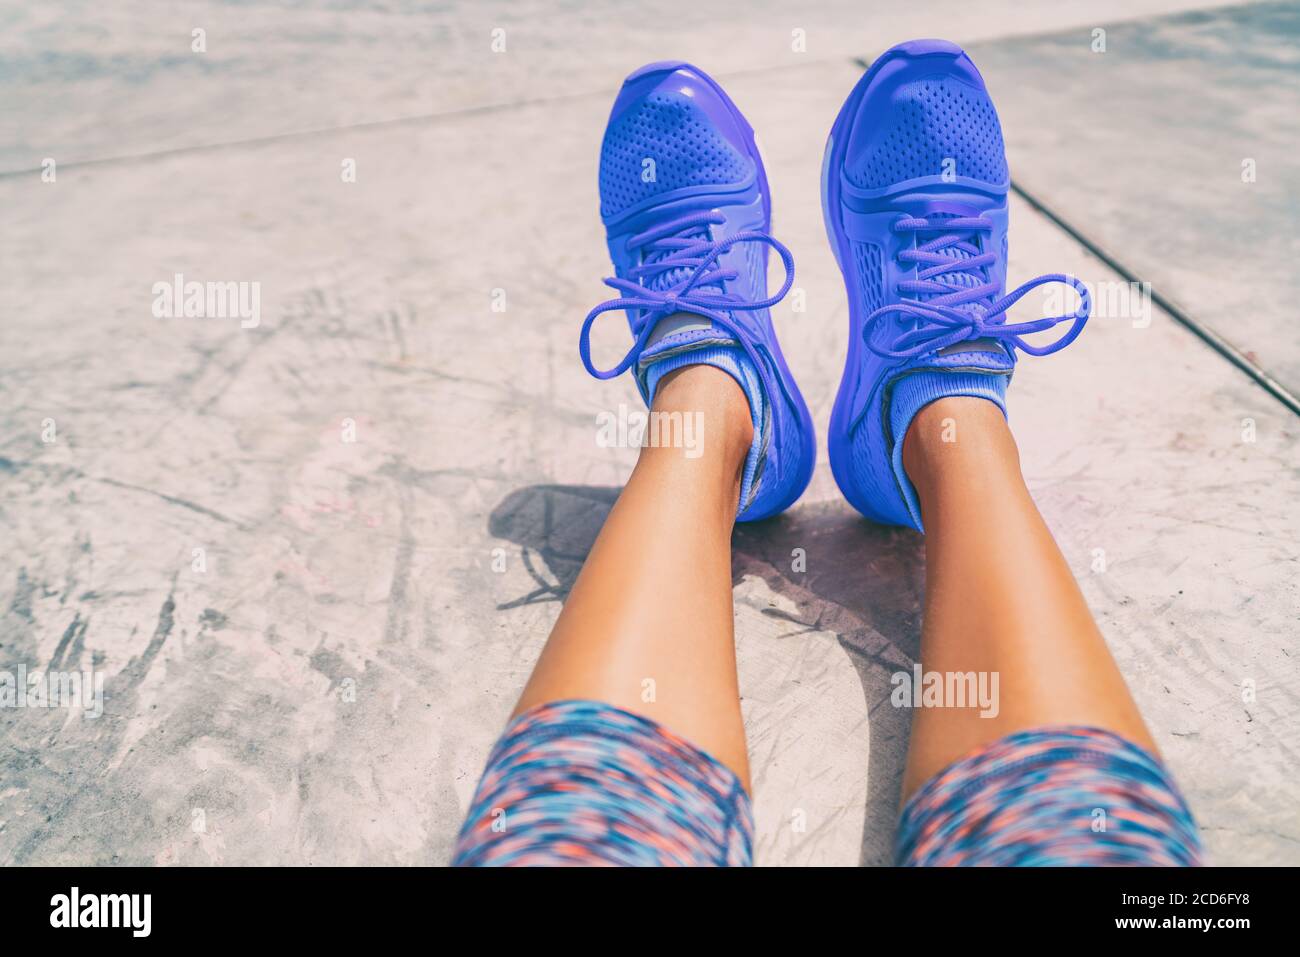 Laufschuhe Mode activewear gesunde aktive Menschen Lebensstil. Selfie-Frau, die während des Trainings auf dem Boden des Fitnessraums Bilder von königsblauen Trainern fotografiert Stockfoto